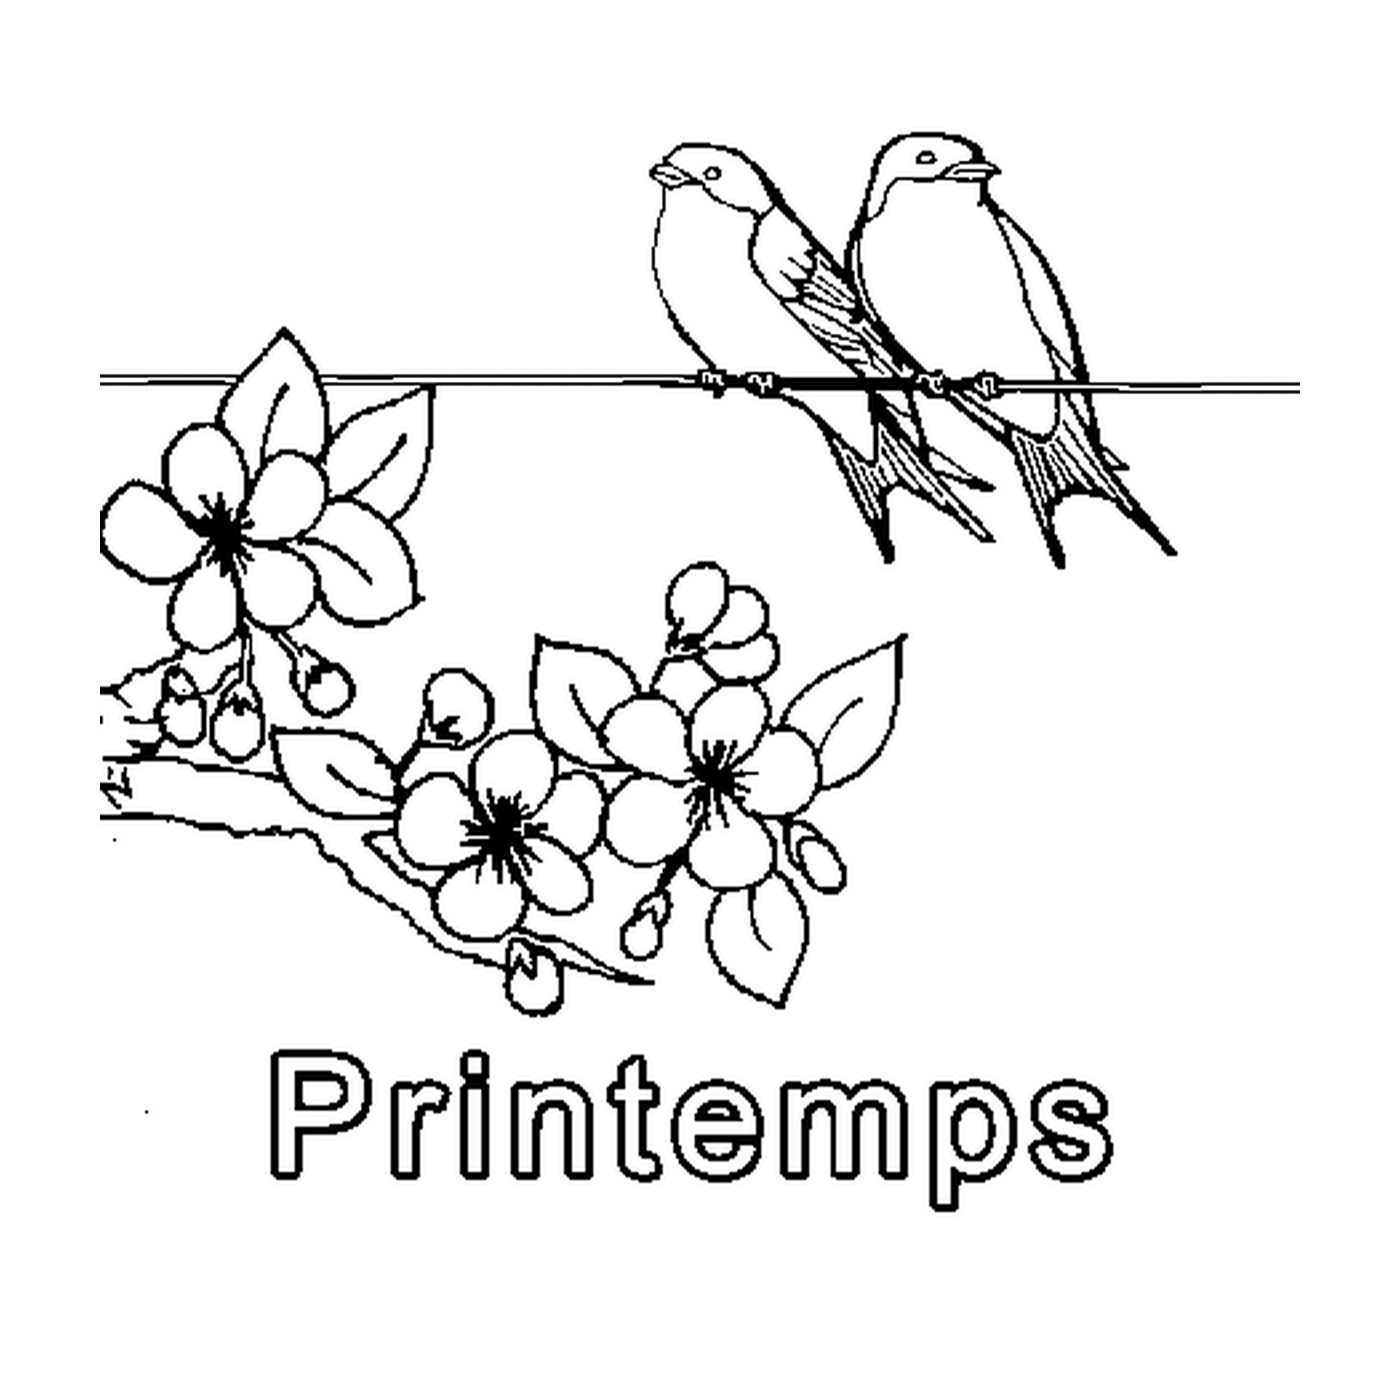   Printemps simple, oiseaux perchés 